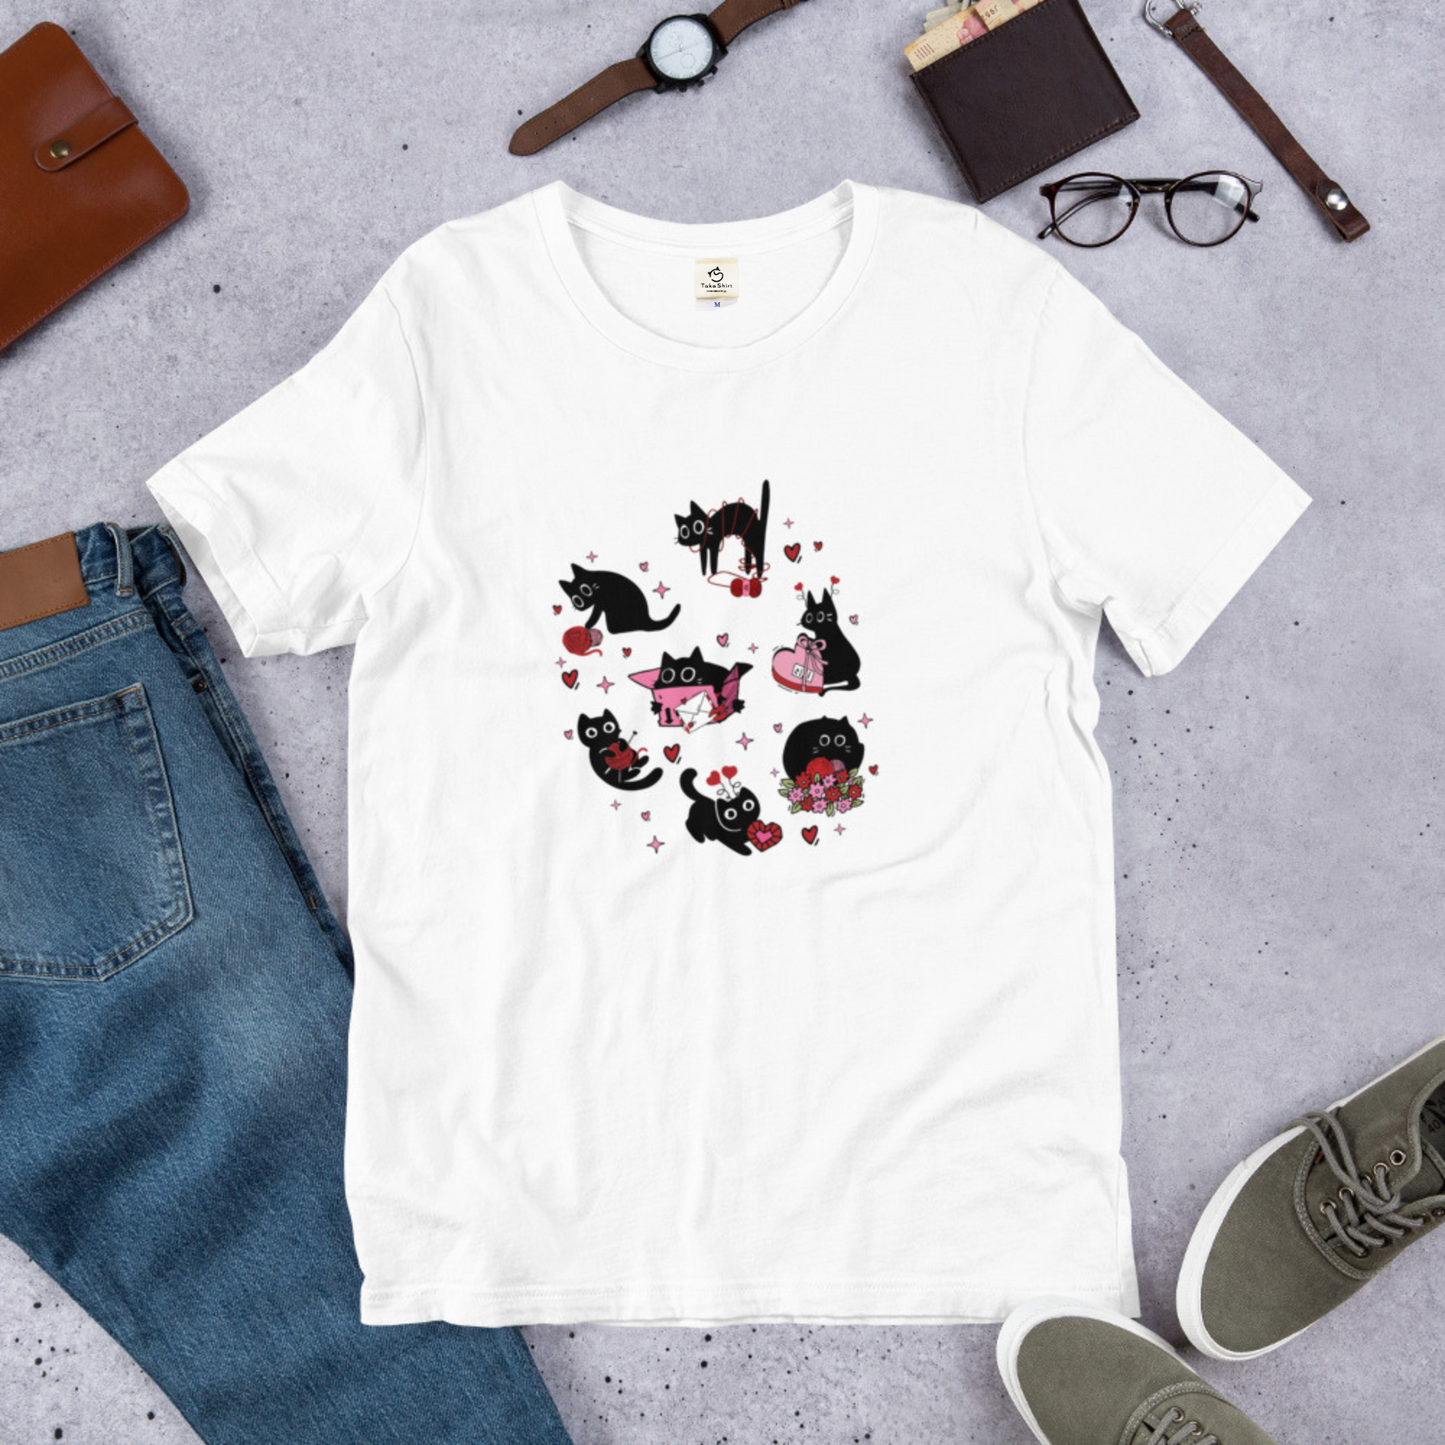 【バレンタイン限定】猫tシャツ ねこ 可愛い猫イラスト